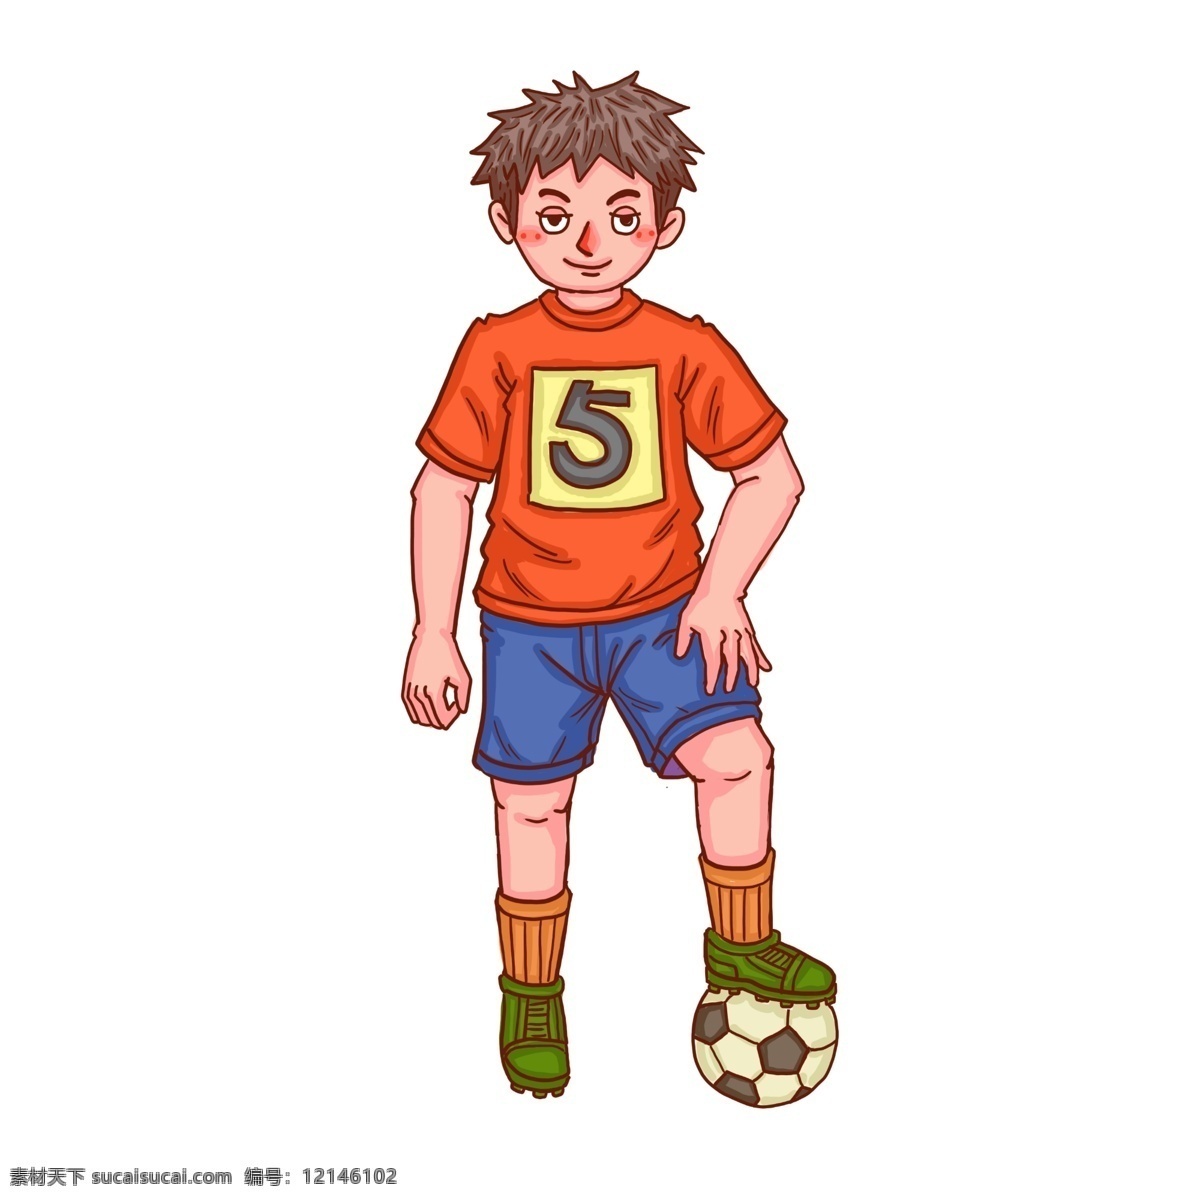 卡通 比赛 青年 人物 足球比赛 比赛人物 卡通比赛人物 足球比赛场 比赛第一名 快乐男孩 奖杯 奖牌